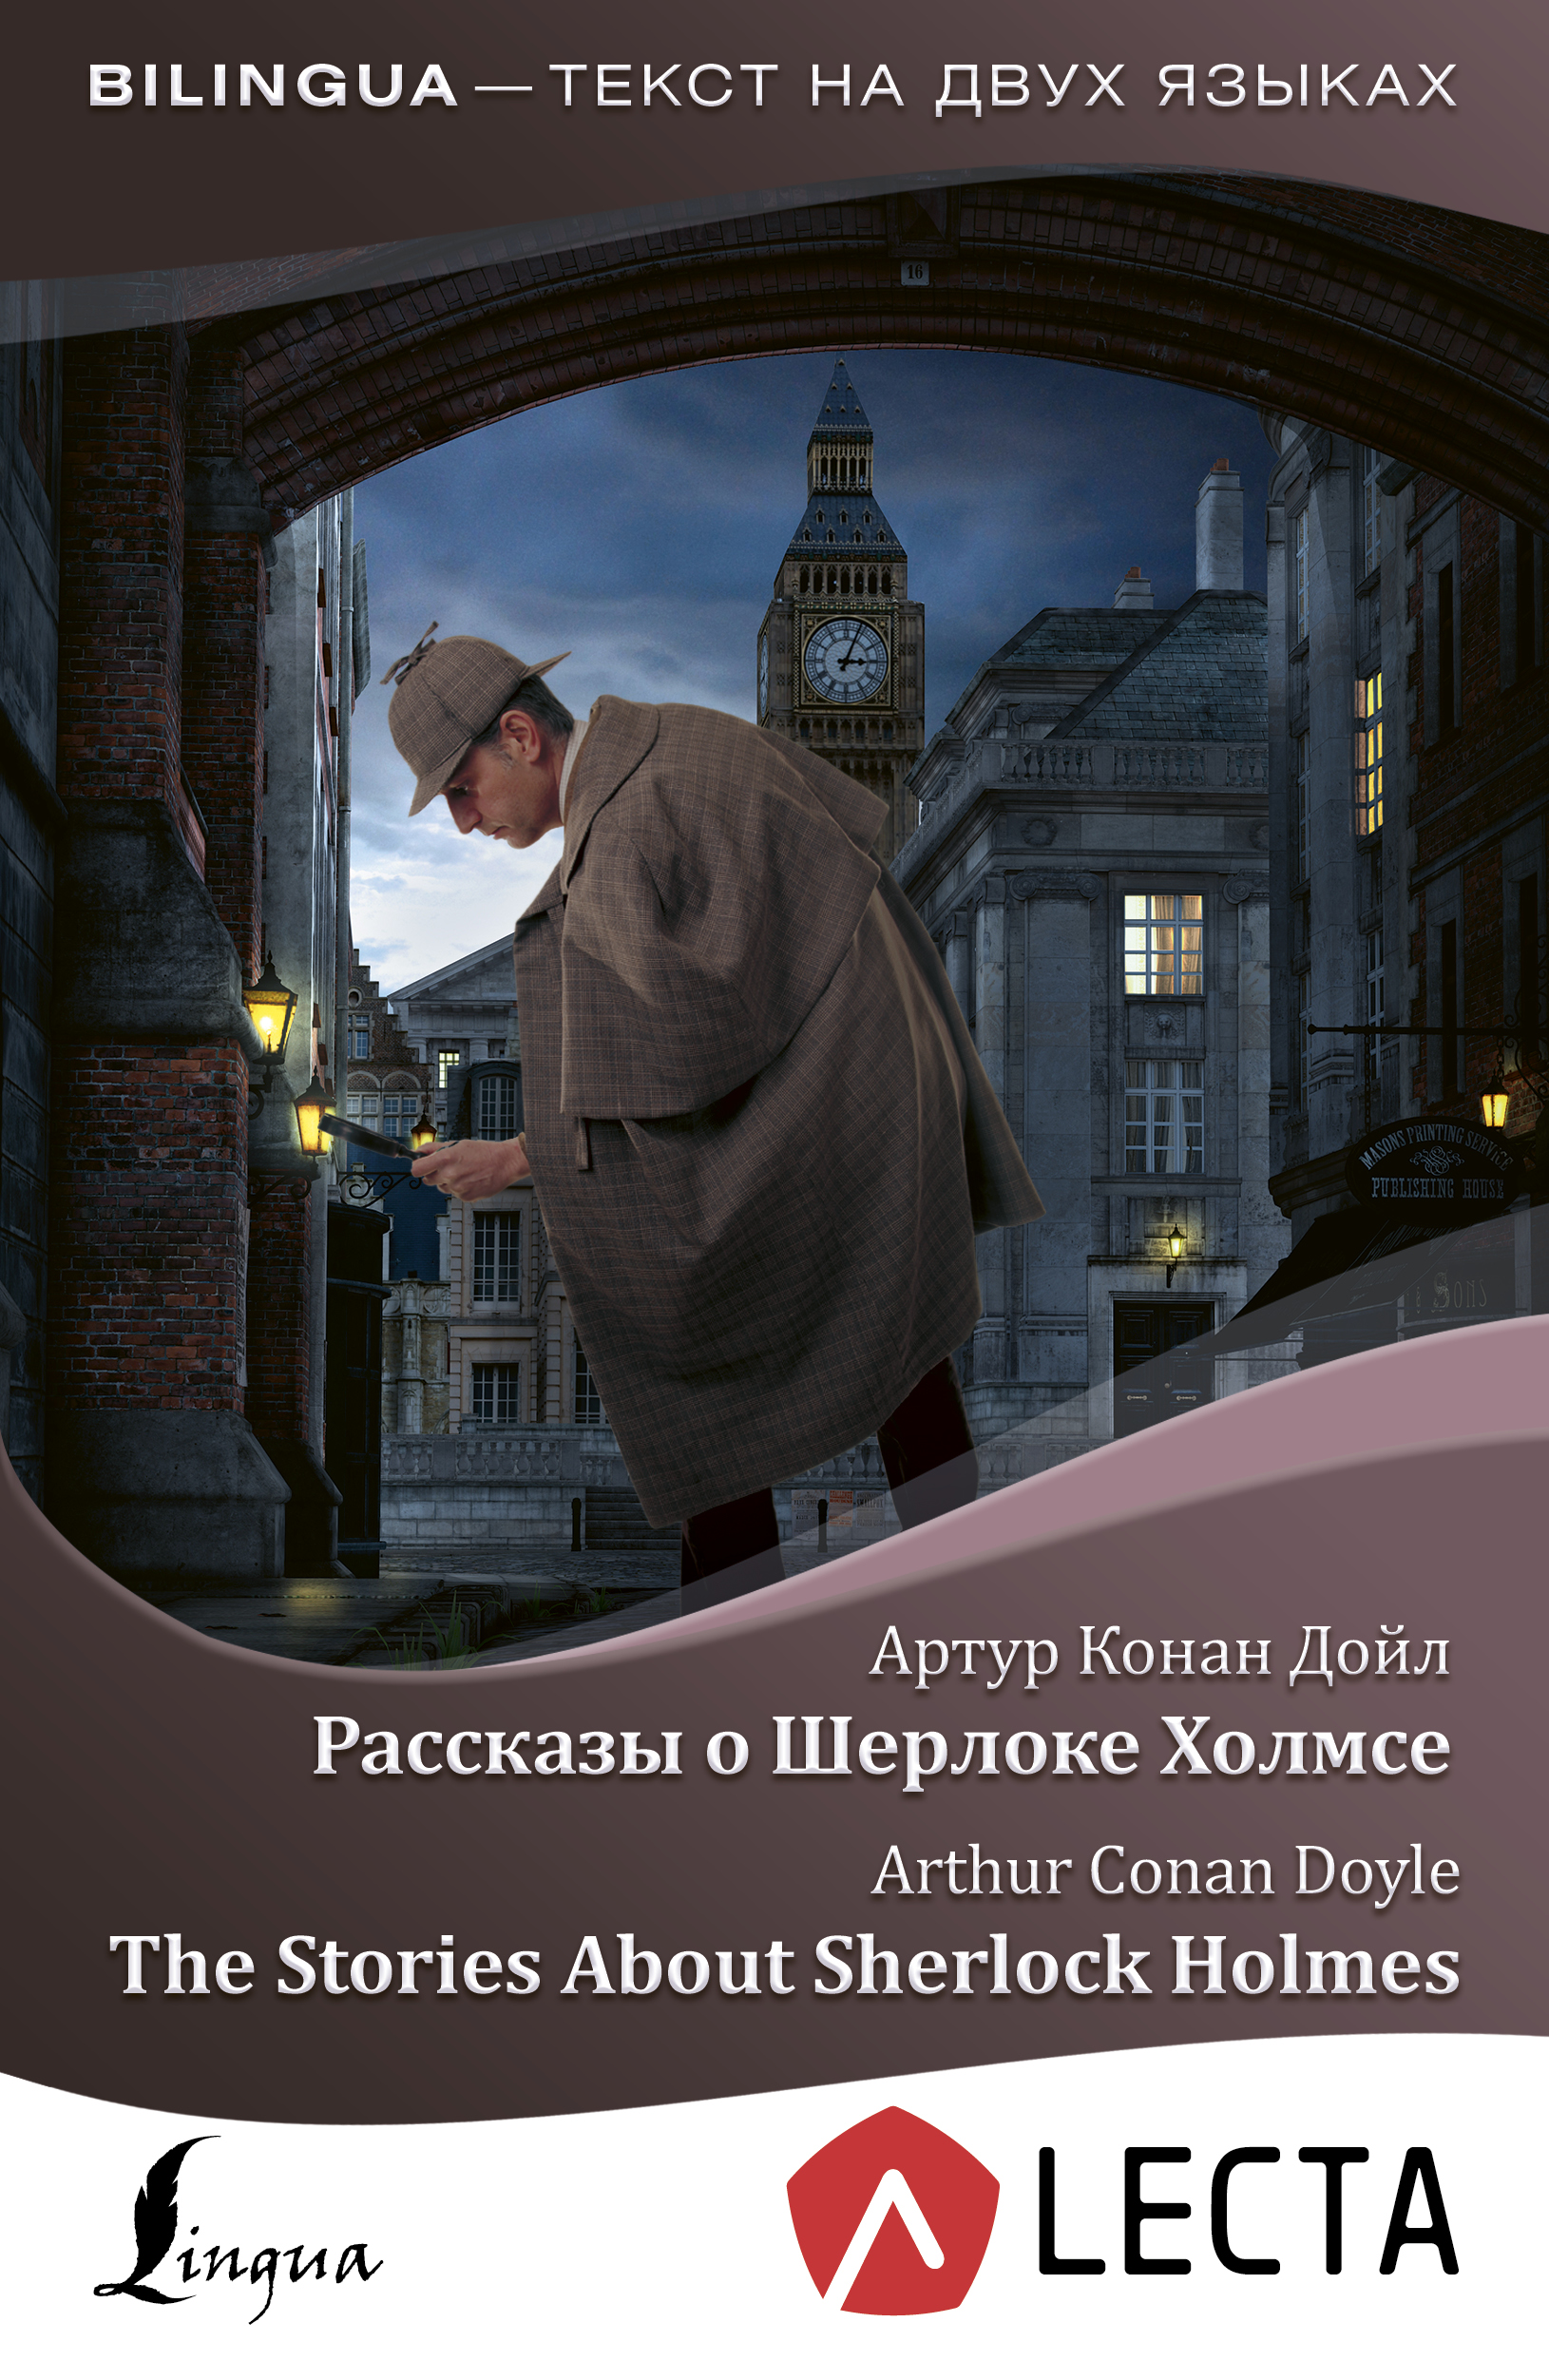 Скачать Рассказы о Шерлоке Холмсе / The Stories About Sherlock Holmes (+ аудиоприложение LECTA) - Артур Конан Дойл